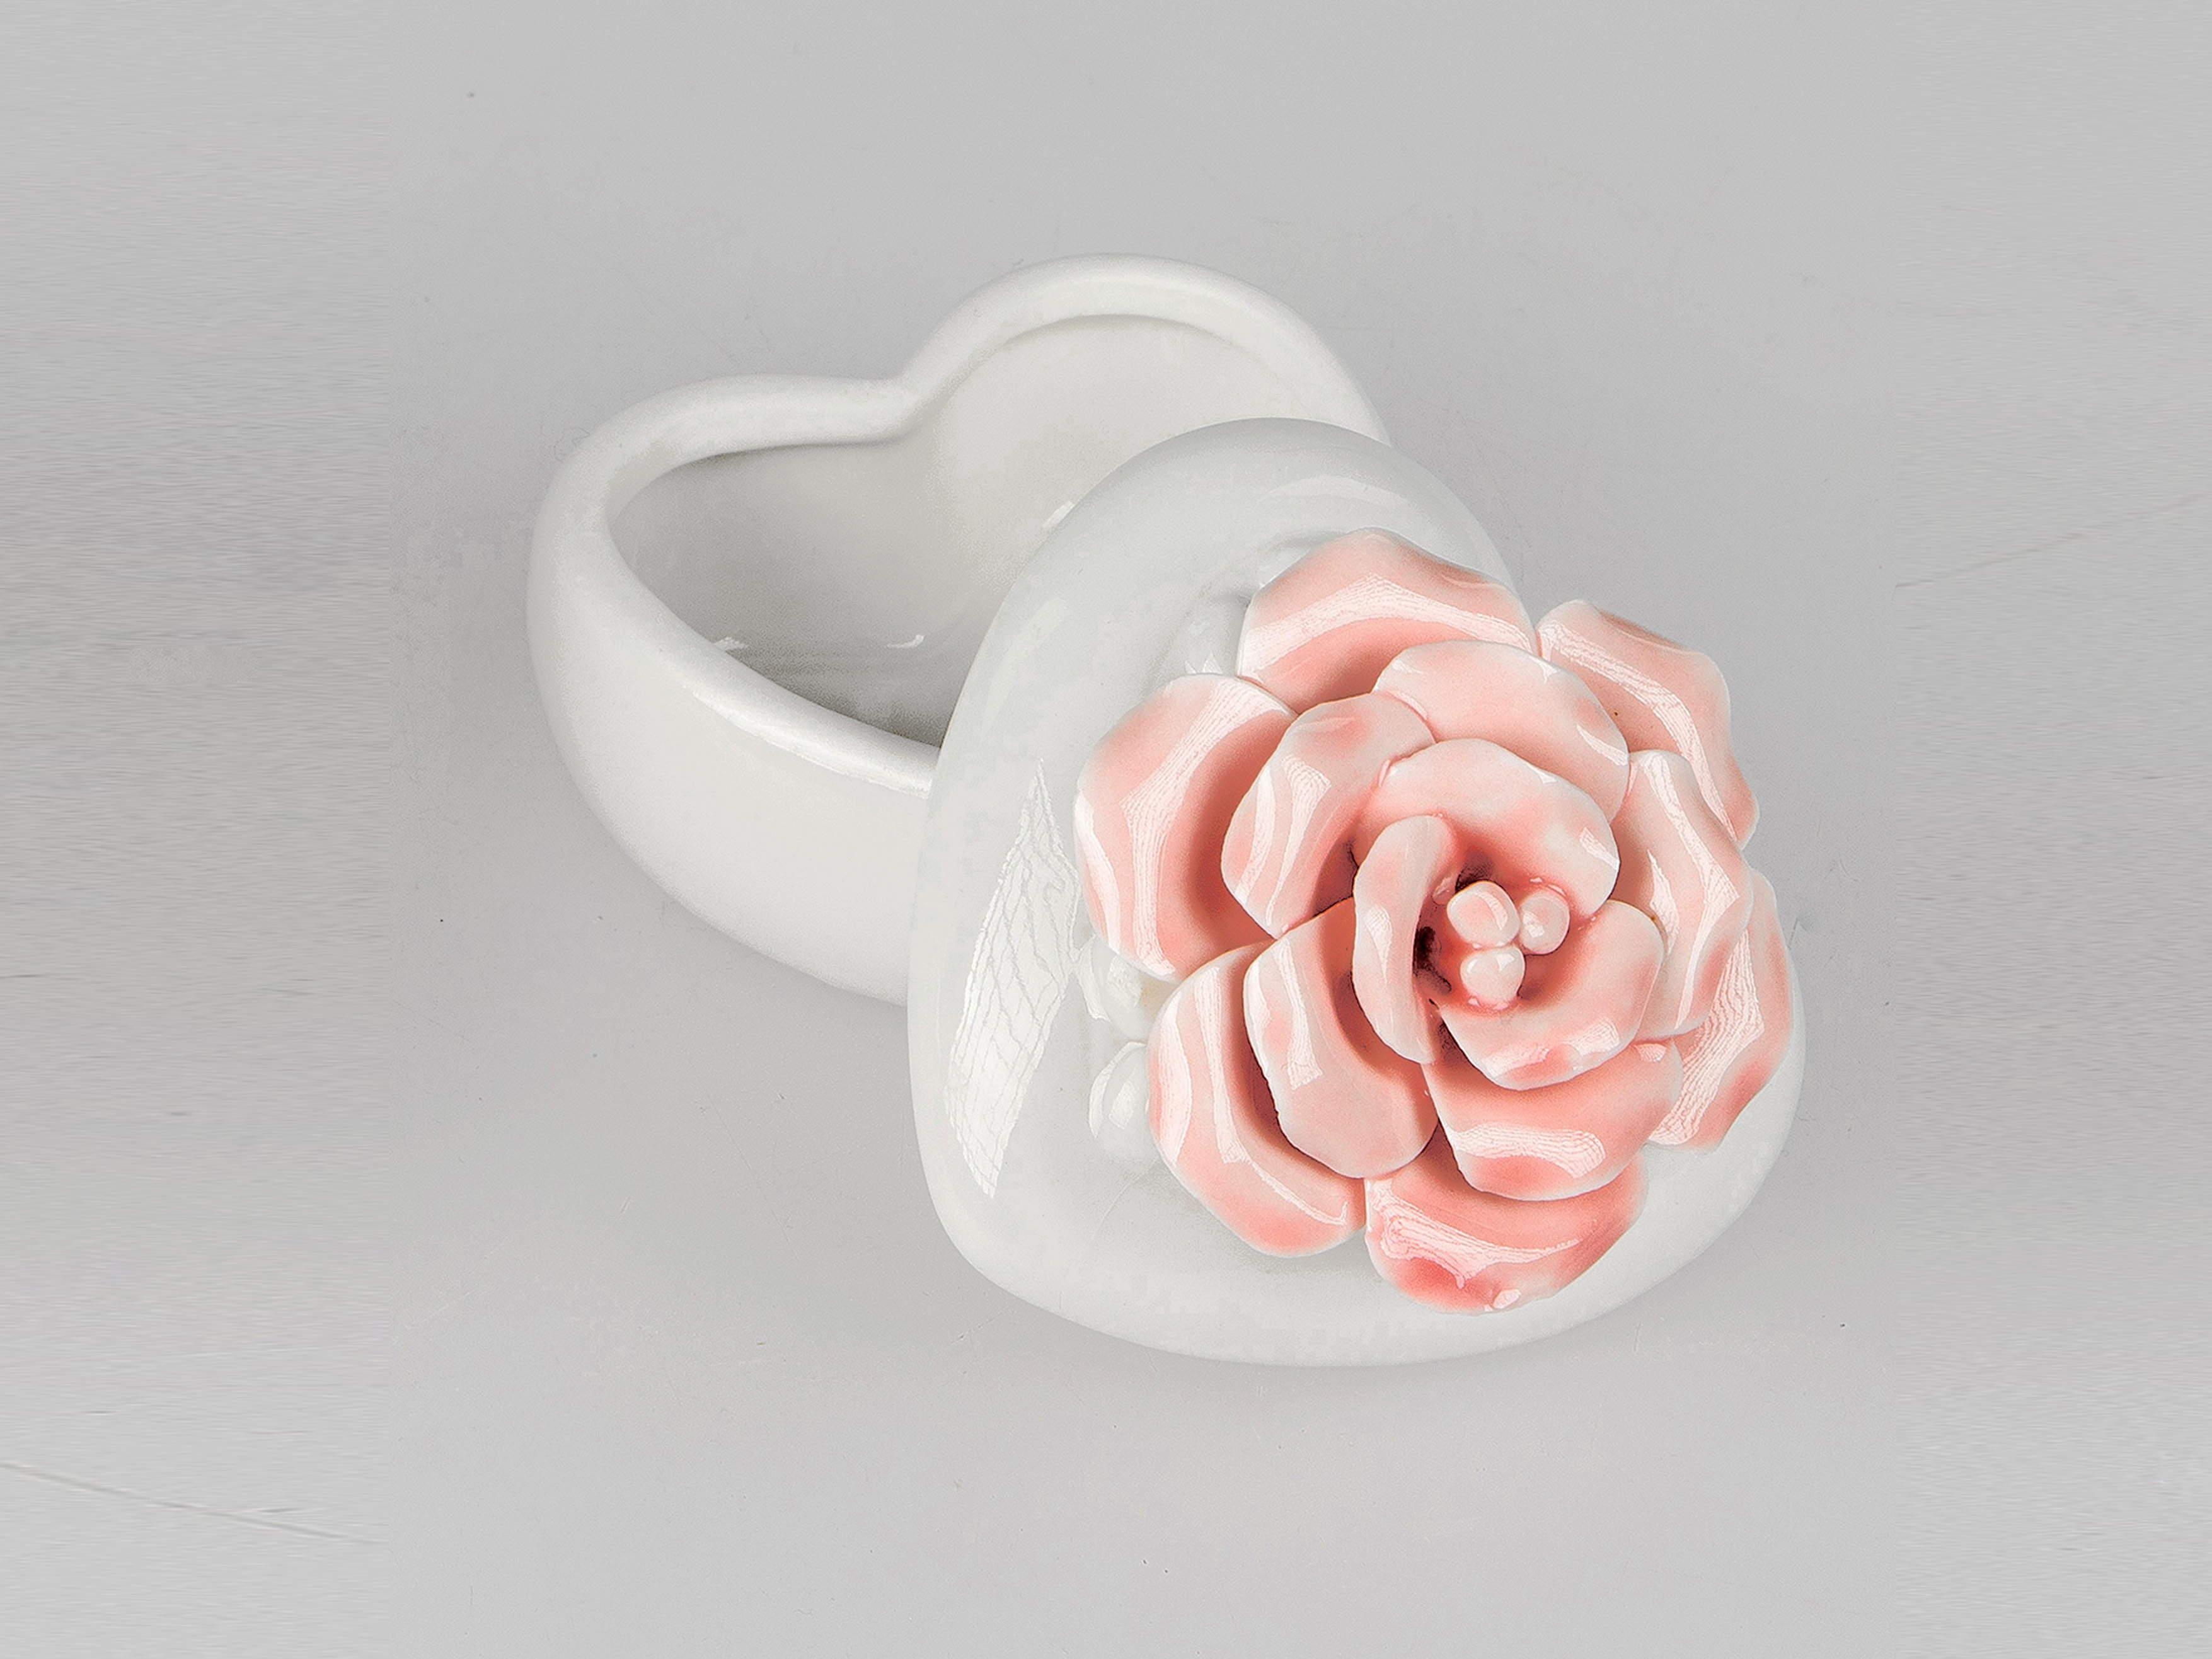 Herz-Dose mit Rose 7cm Porzellan Geschenk-Box Aufbewahrung Vorratsdose Formano